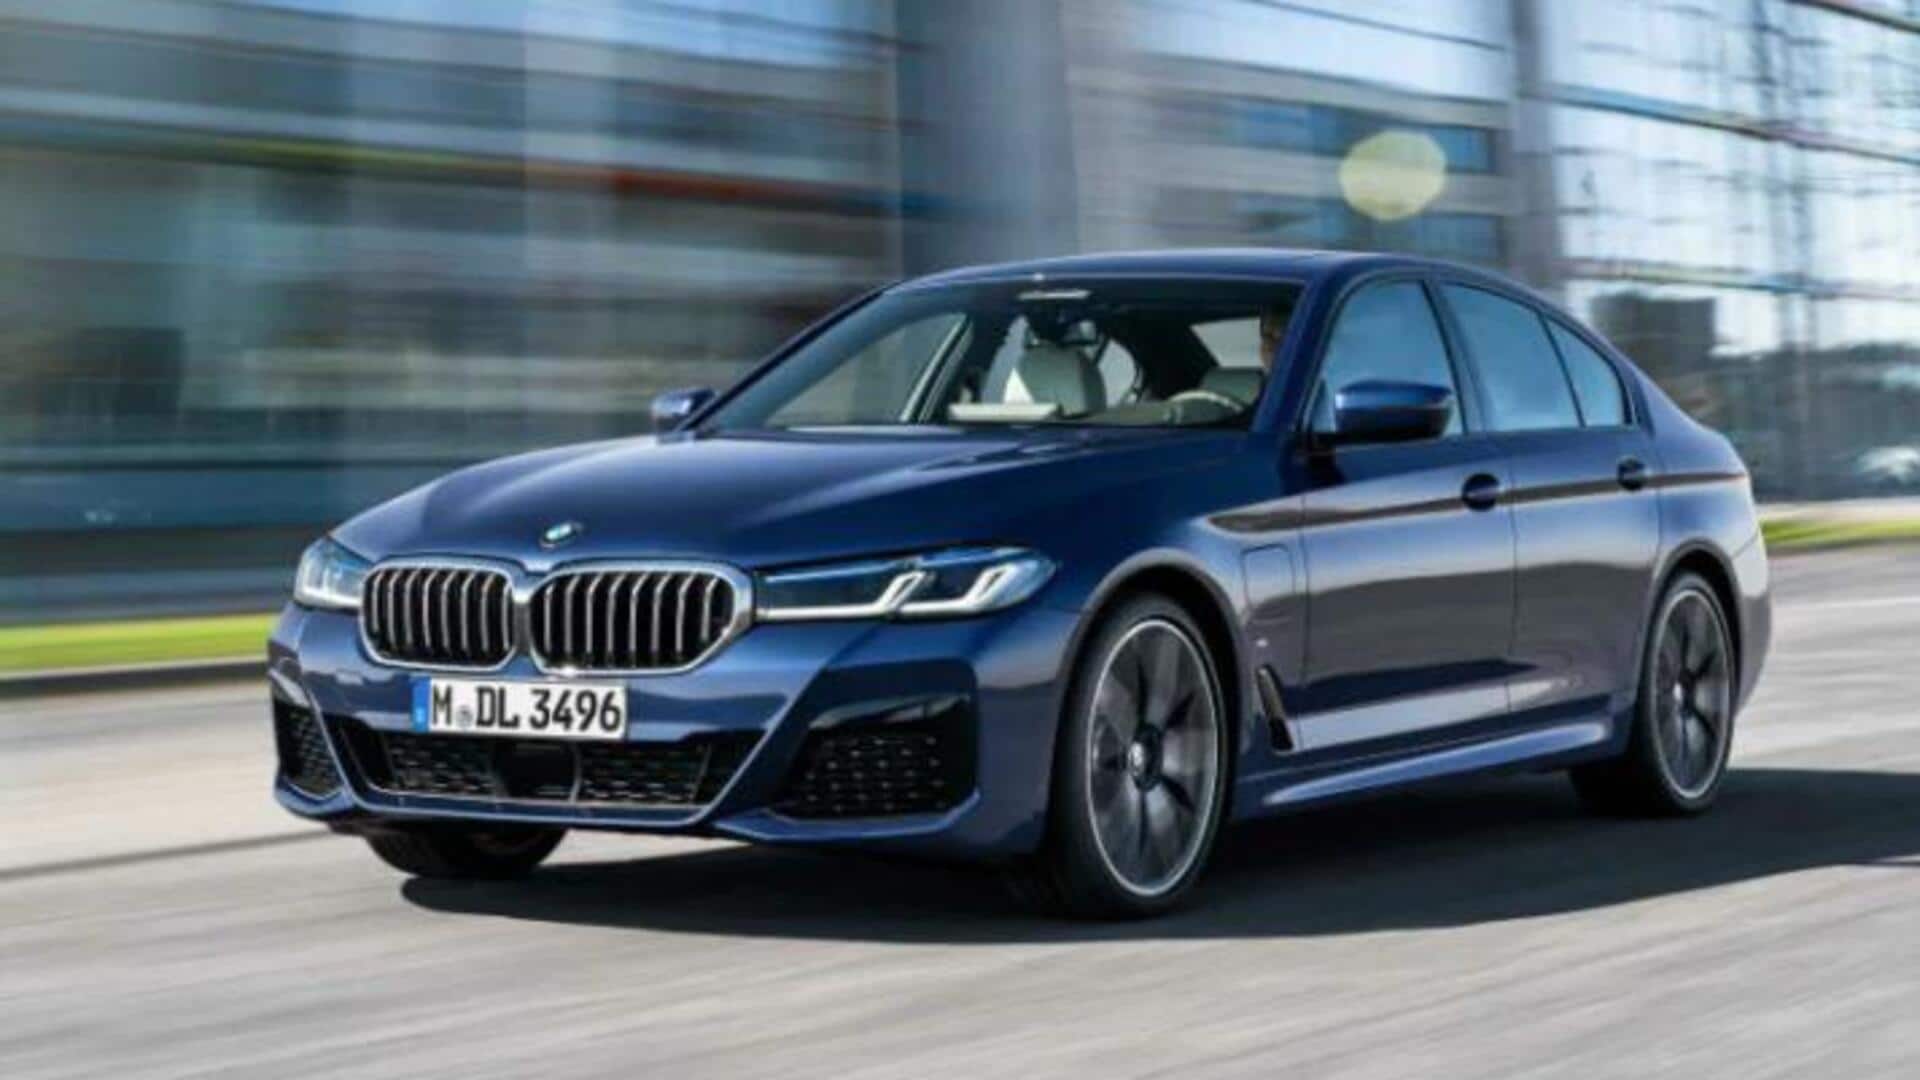 BMW 5-सीरीज कार के लाइनअप में हुआ बदलाव, अब केवल 2 वेरिएंट में आएगी गाड़ी 